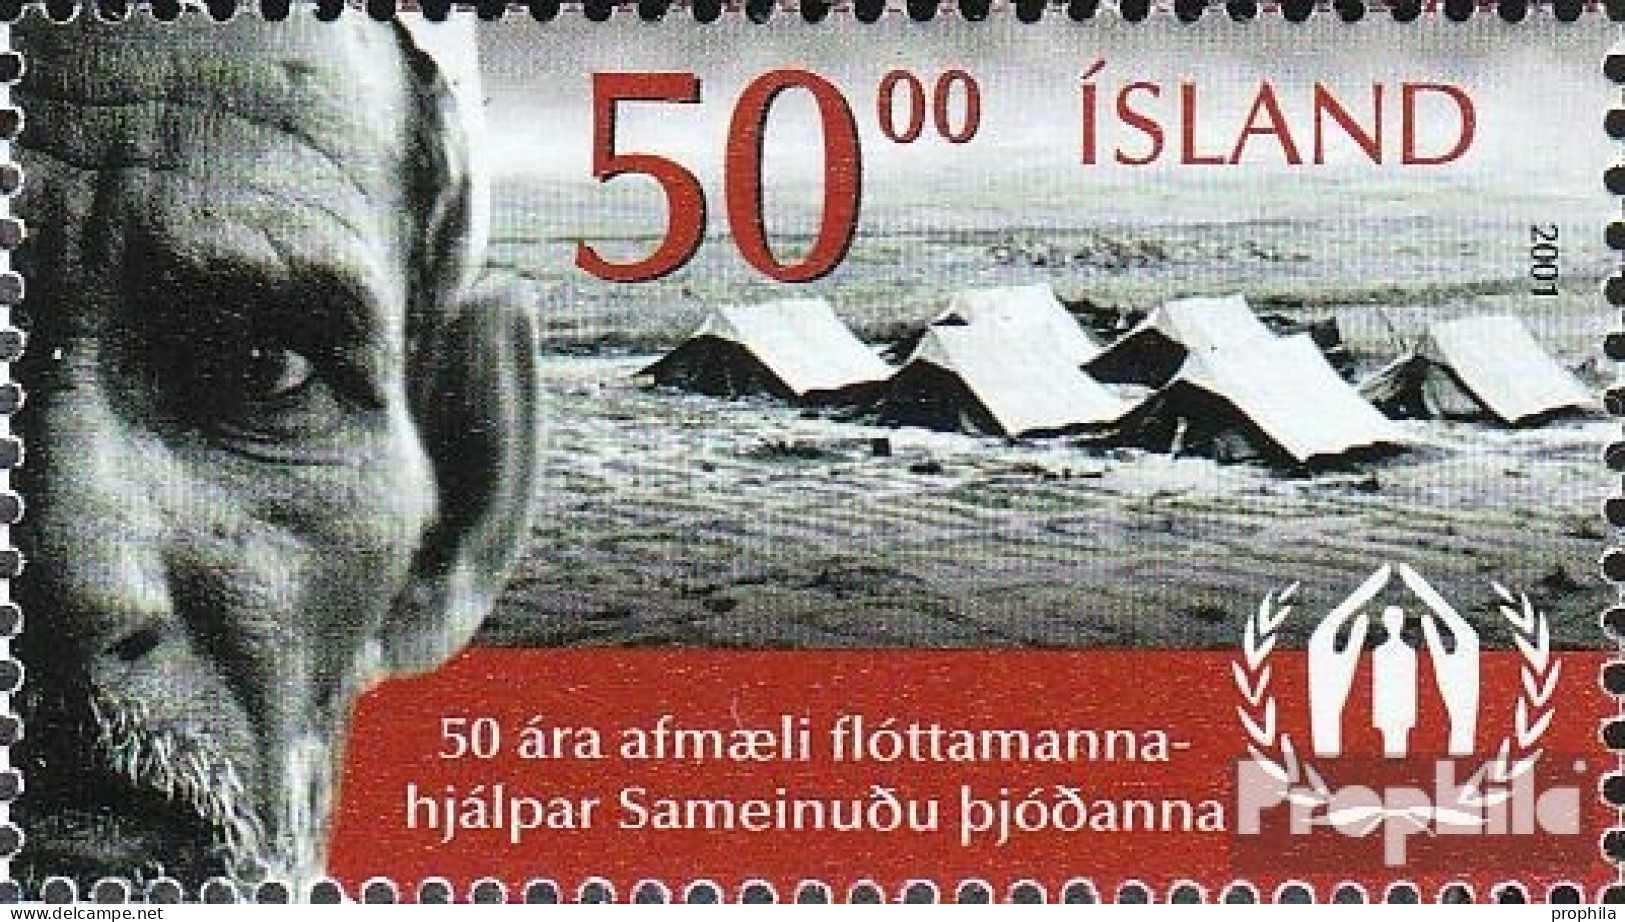 Island 976 (kompl.Ausg.) Postfrisch 2001 Flüchtlingskommissar - Unused Stamps